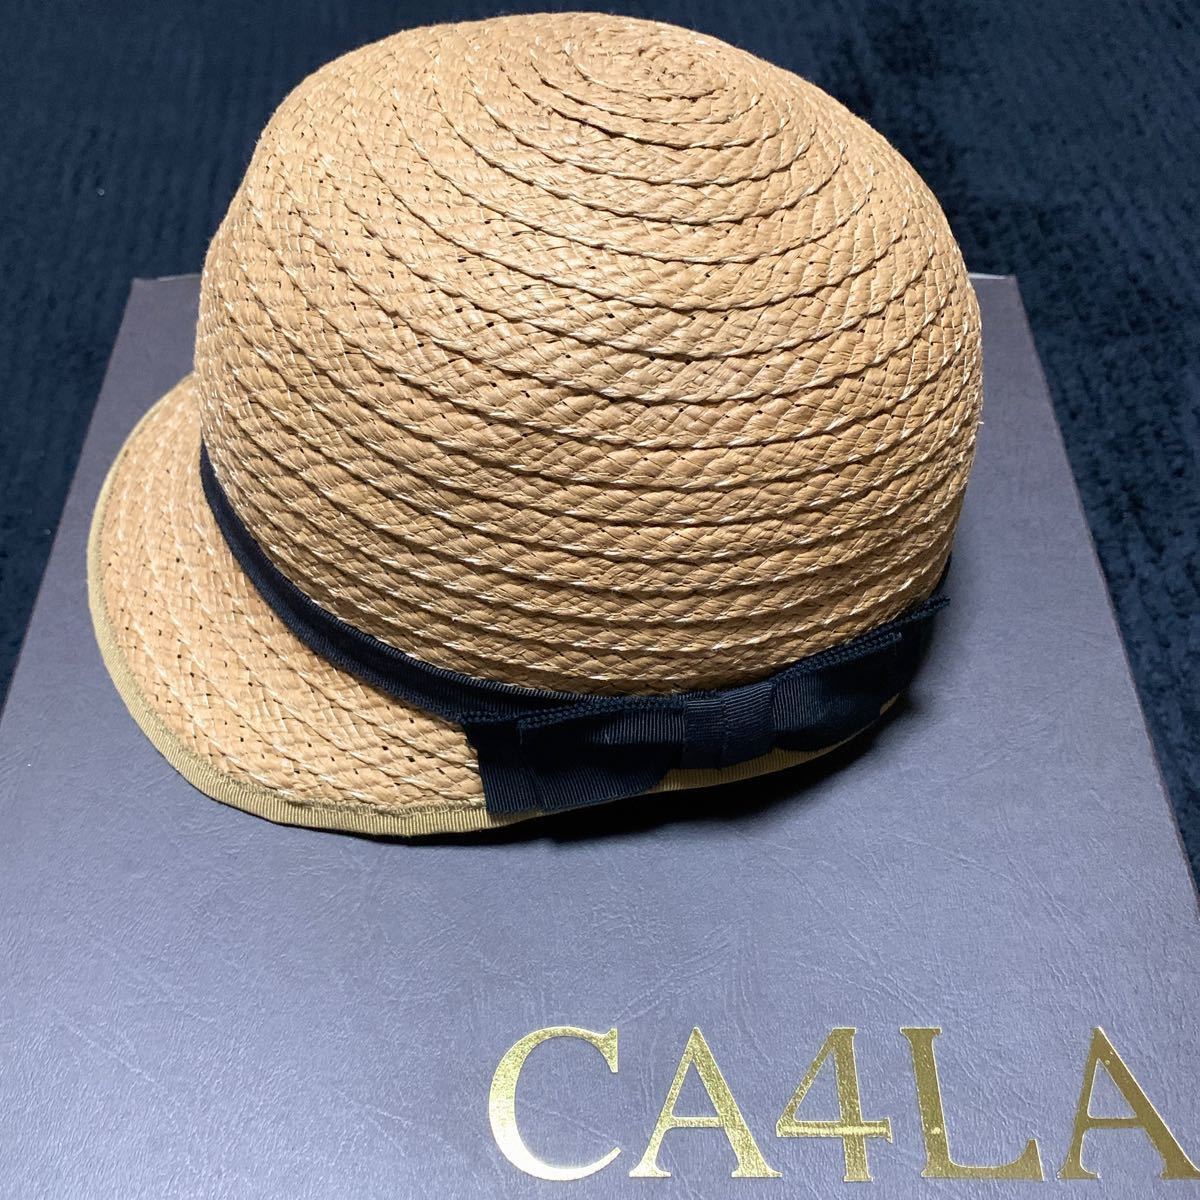 上品】 CA４LA カシラ 麦わら帽子 superior-quality.ru:443